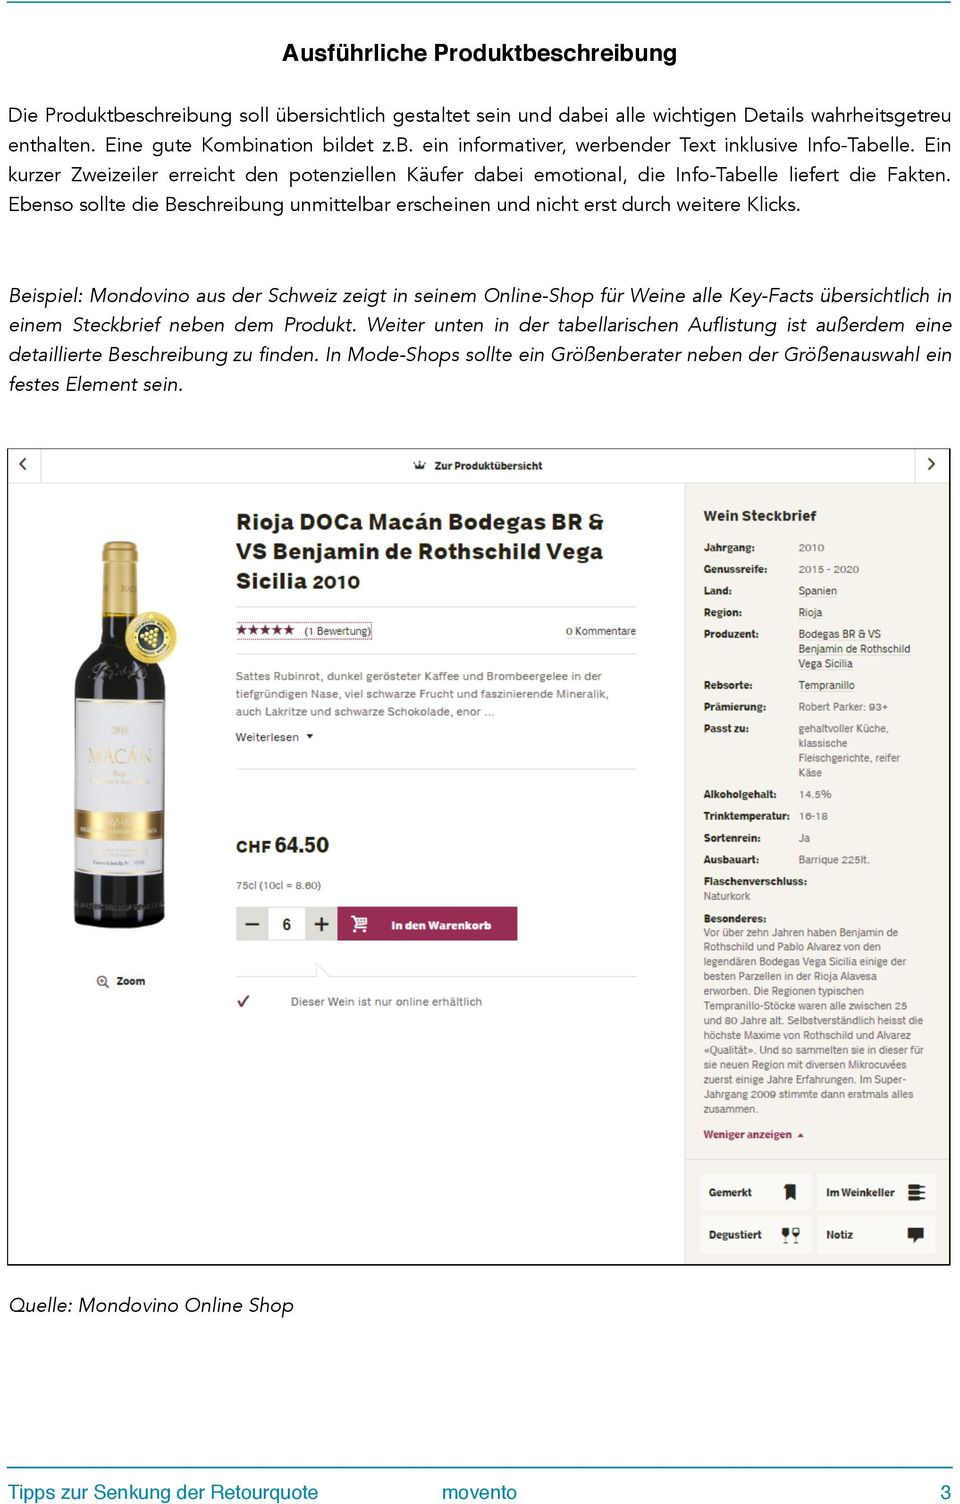 Beispiel: Mondovino aus der Schweiz zeigt in seinem Online-Shop für Weine alle Key-Facts übersichtlich in einem Steckbrief neben dem Produkt.